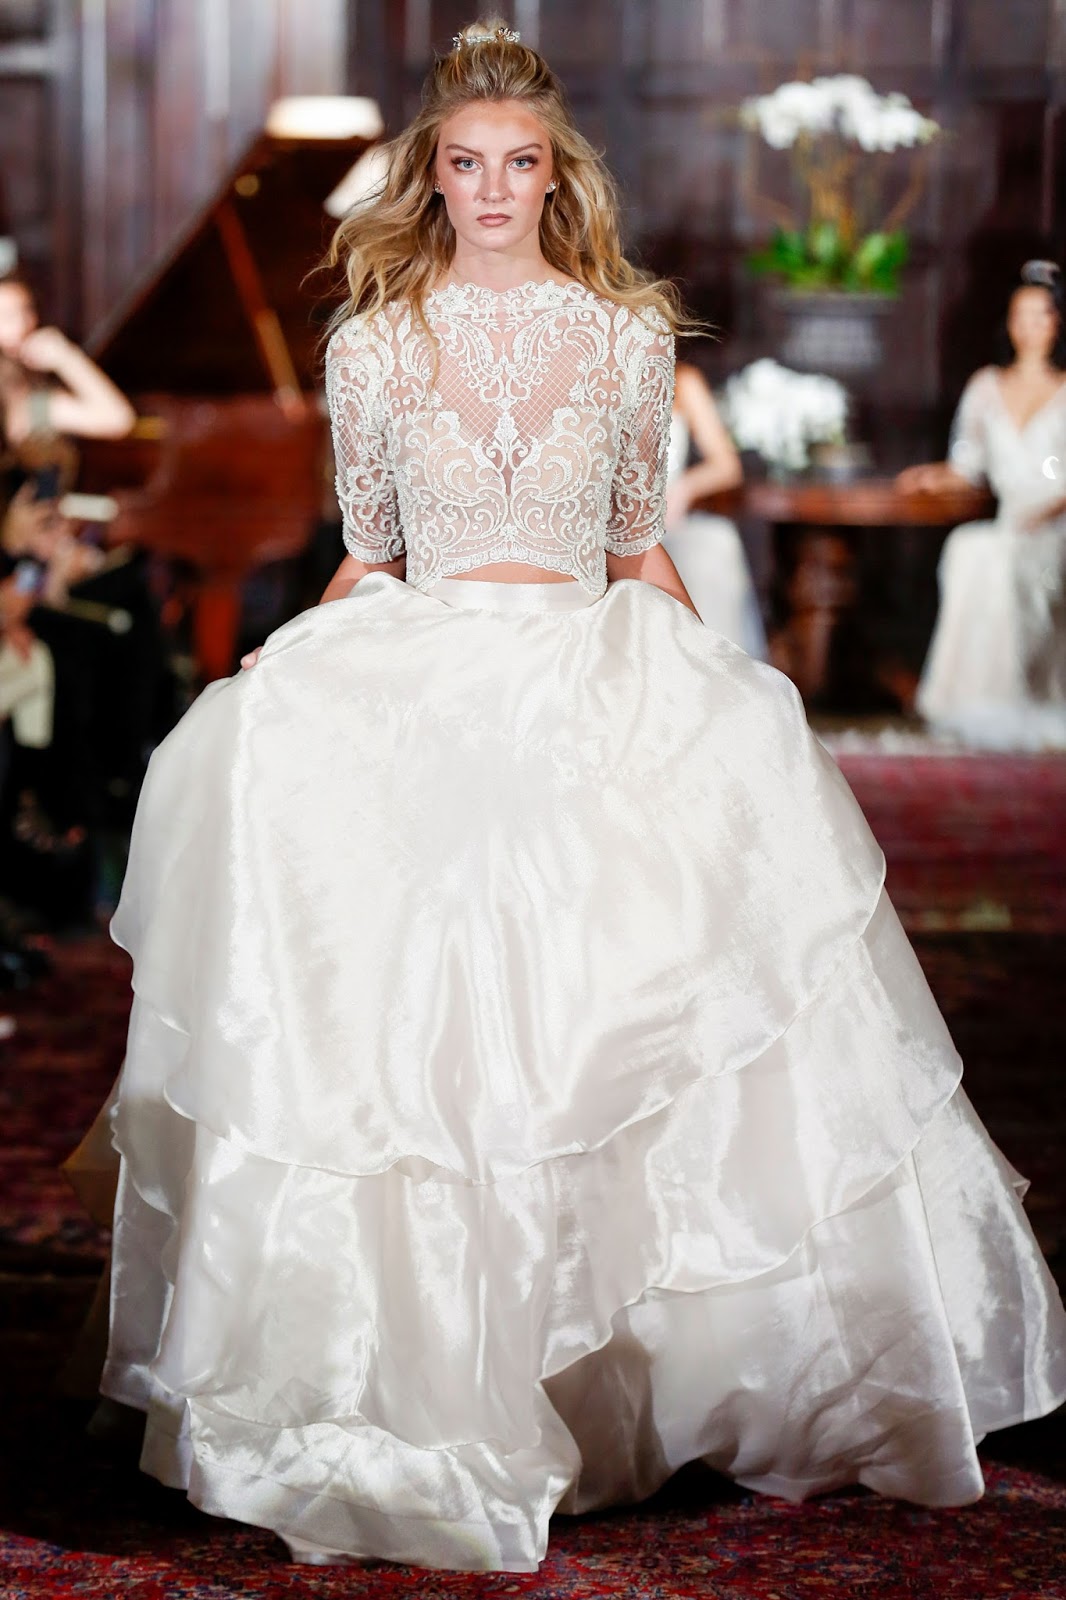 The Glamorous Bride: VINO